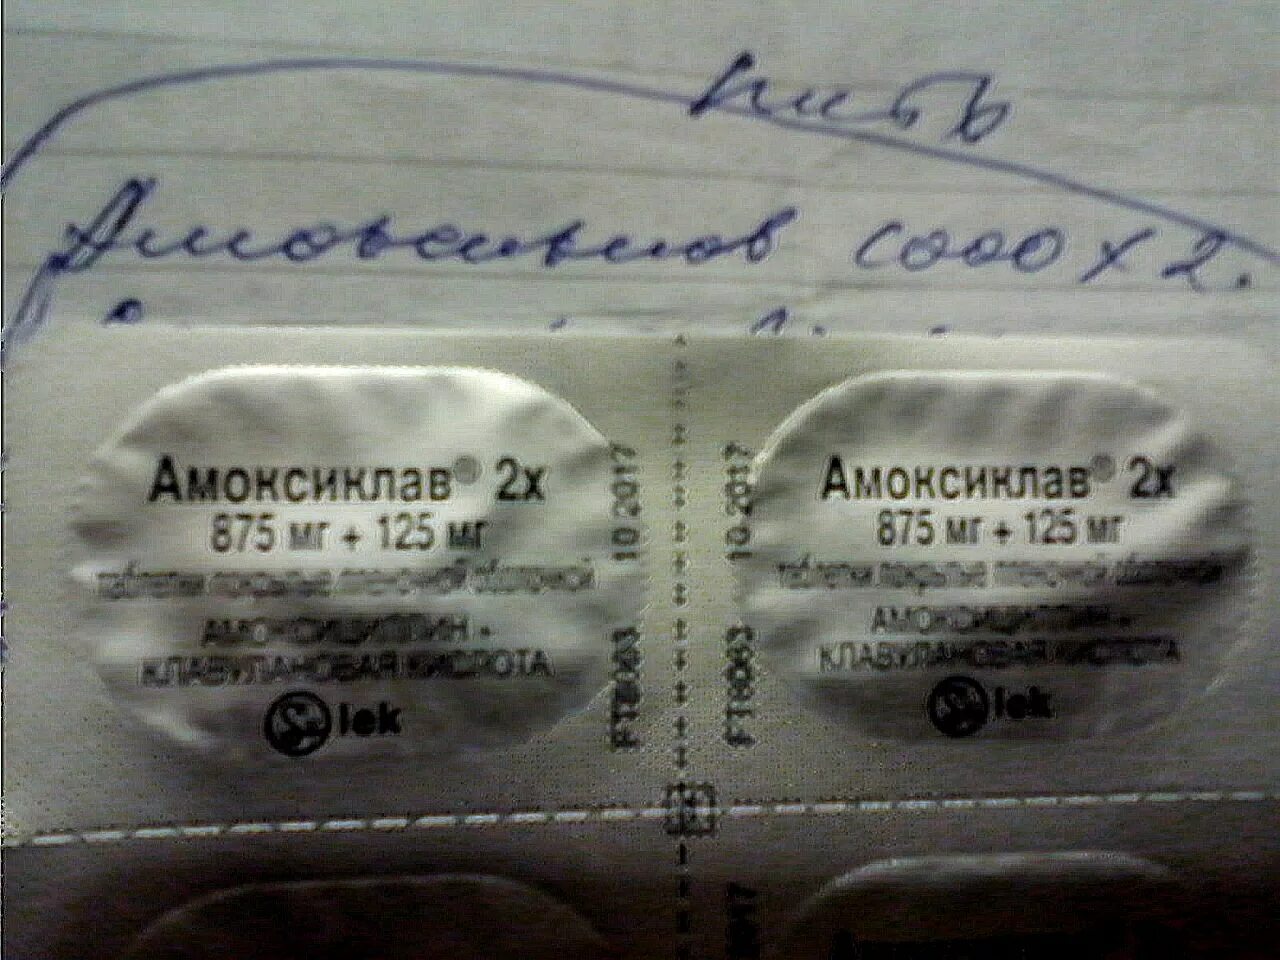 Рецепт на антибиотики амоксиклав 875+125. Амоксиклав рецепт на латинском.